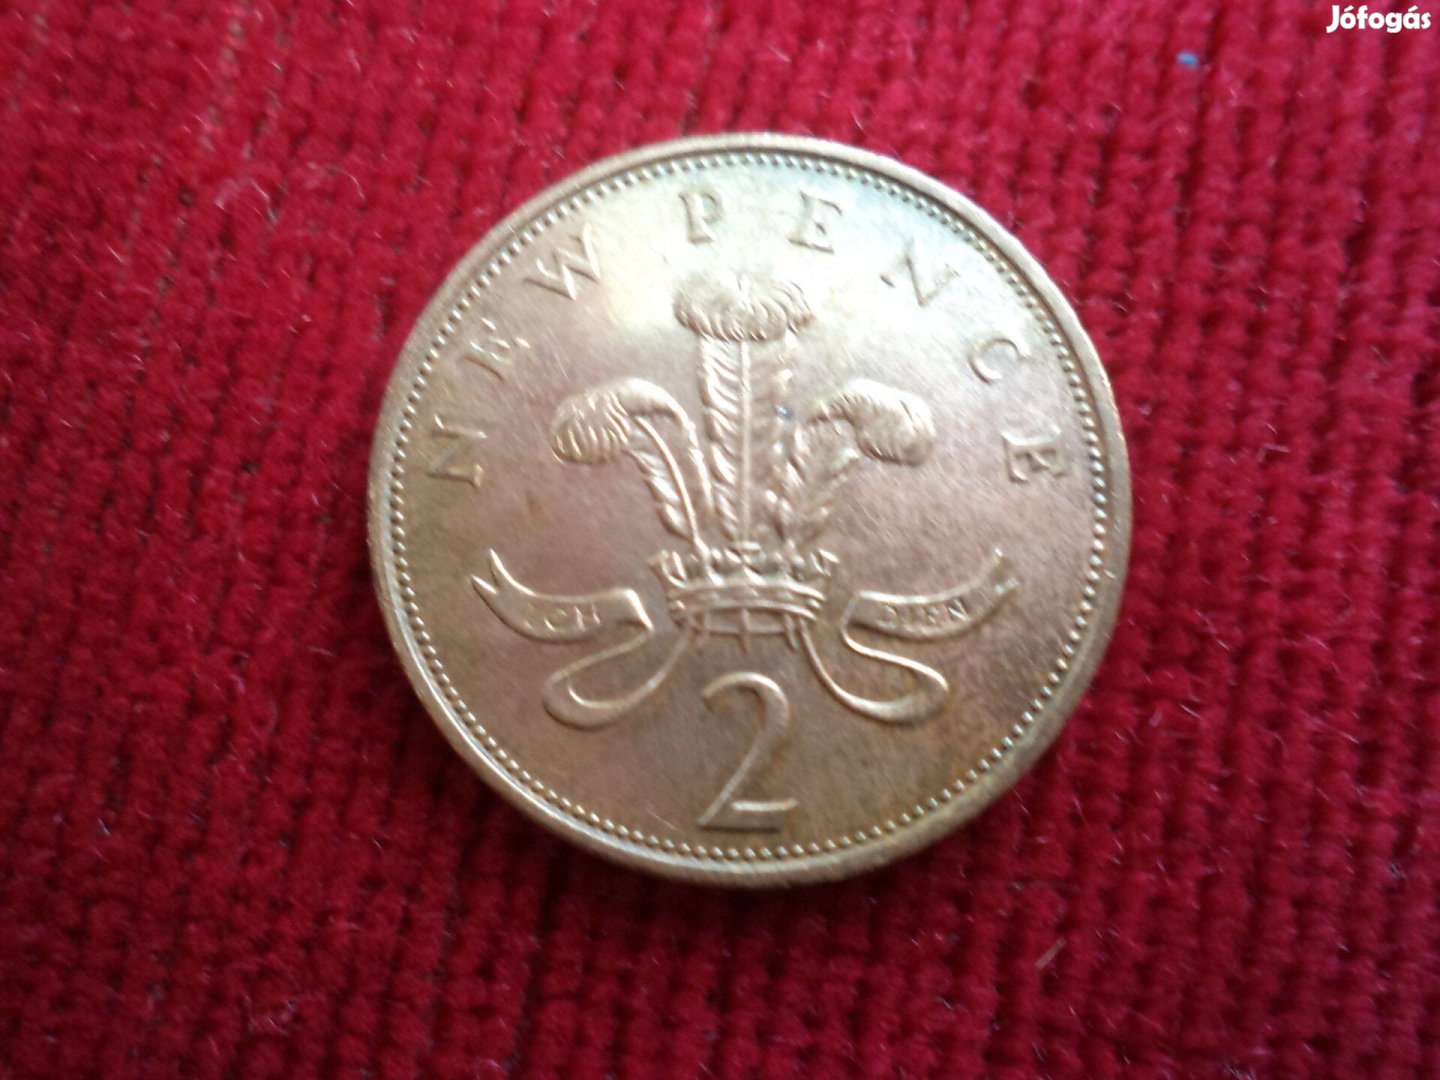 1975-ös új 2 penny, ritka érme eladó